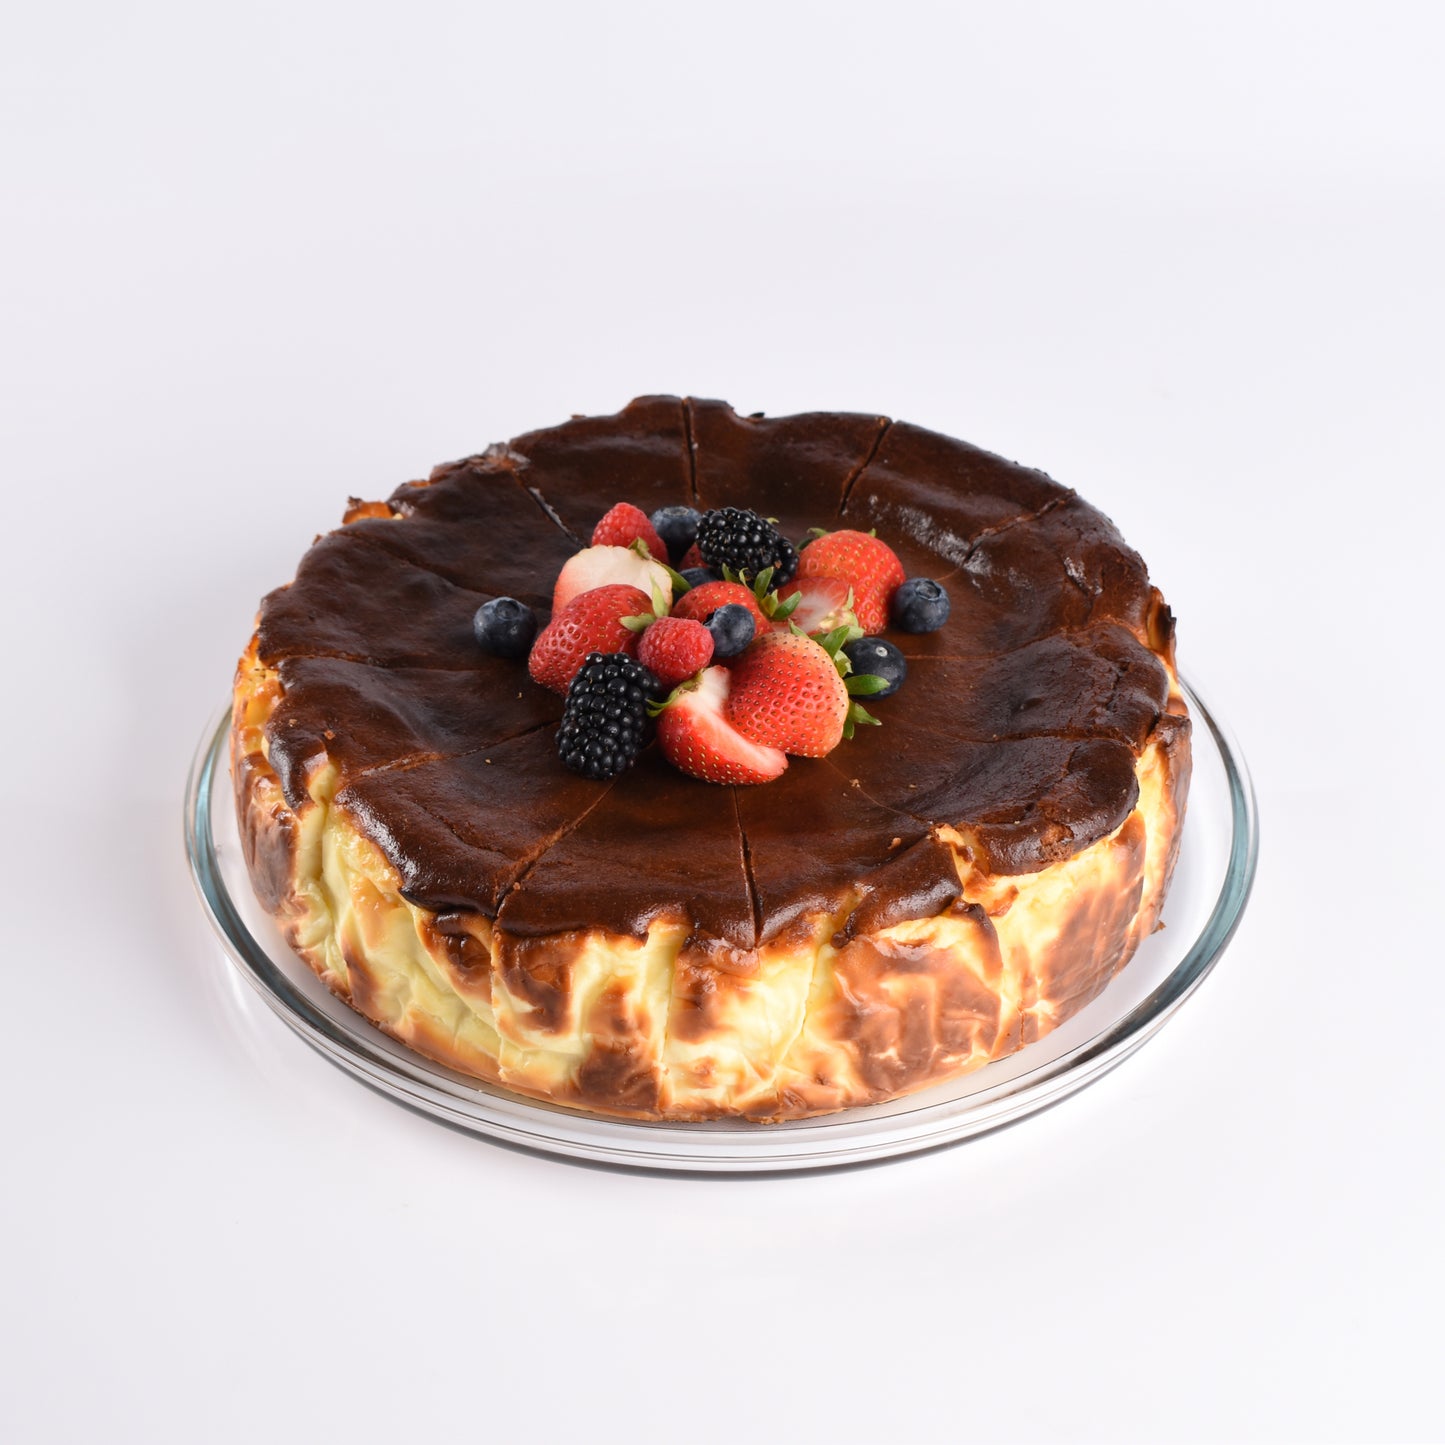 Whole Basque Cheesecake - باسكيو تشيزكيك كاملة